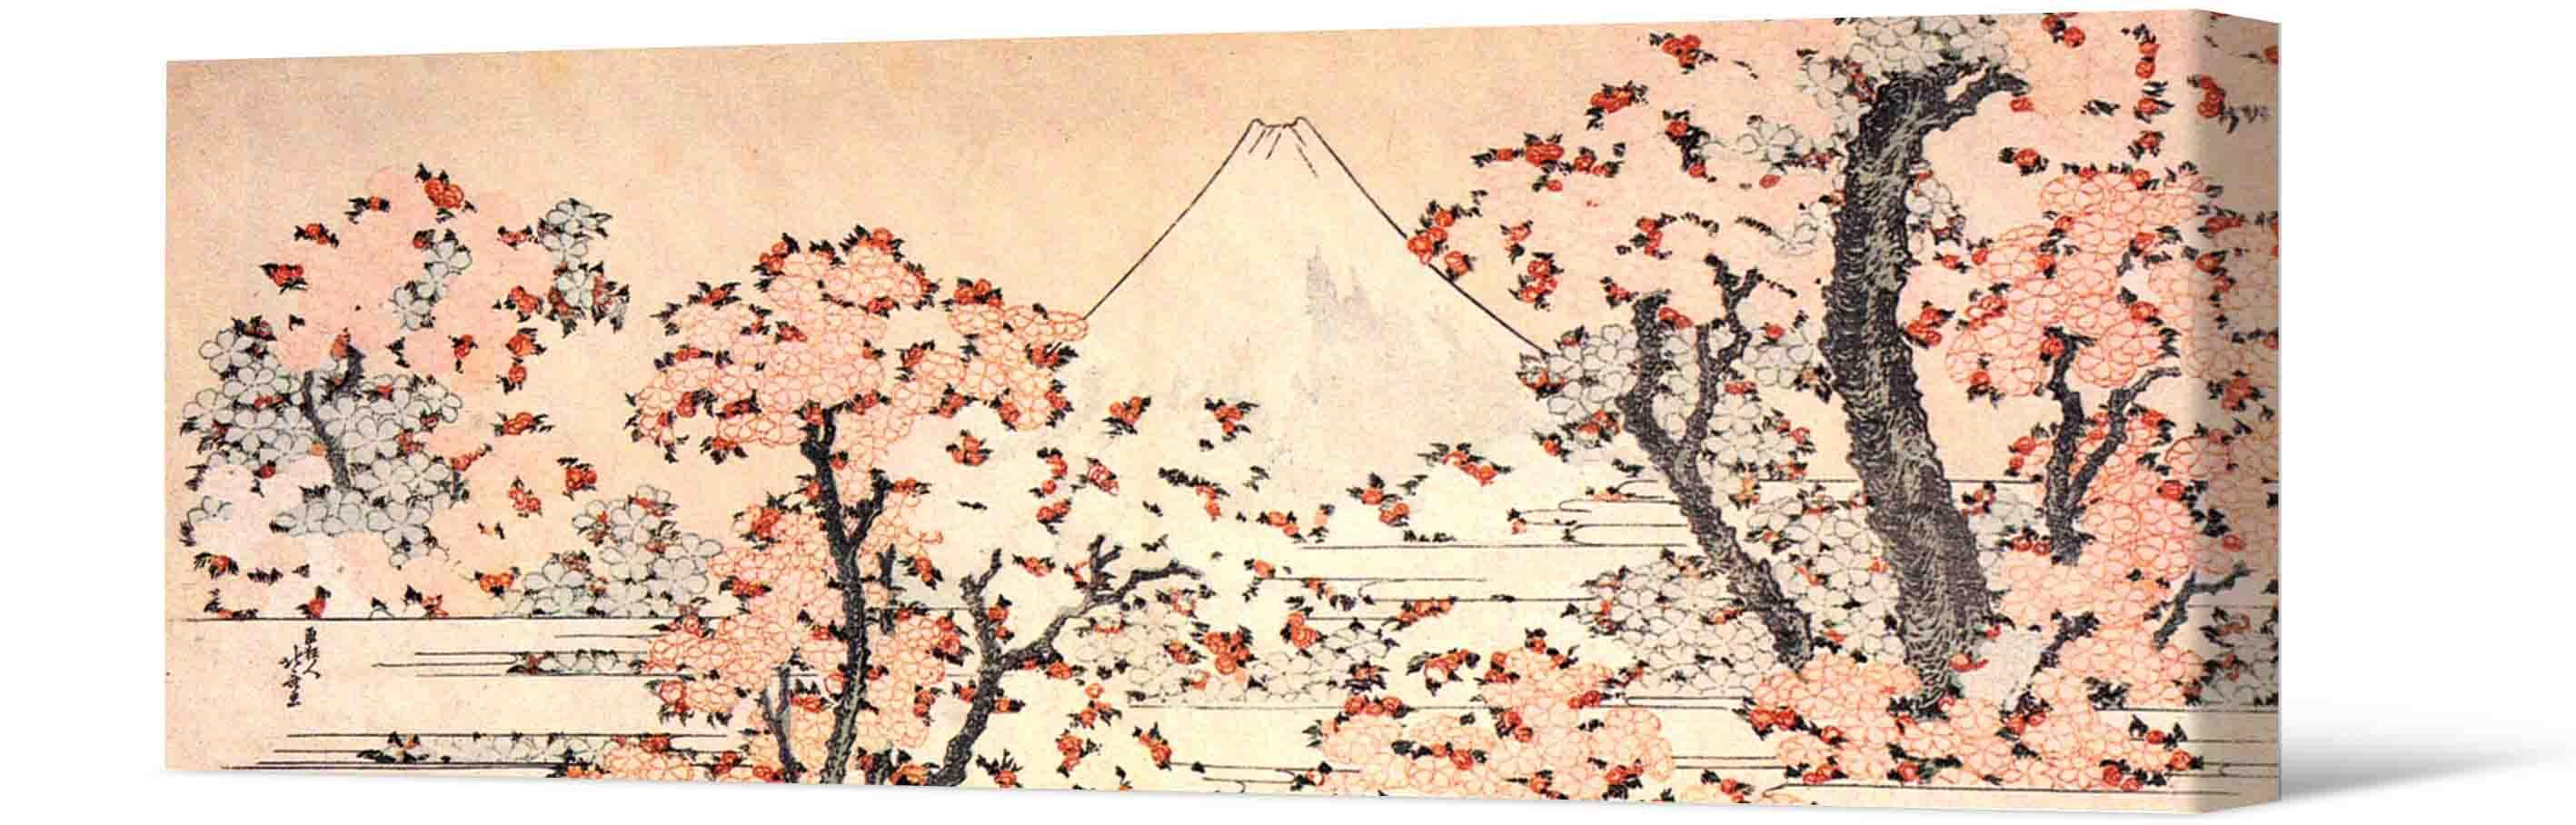 Bild Fotobild - Sakura-Bäume und Vulkan